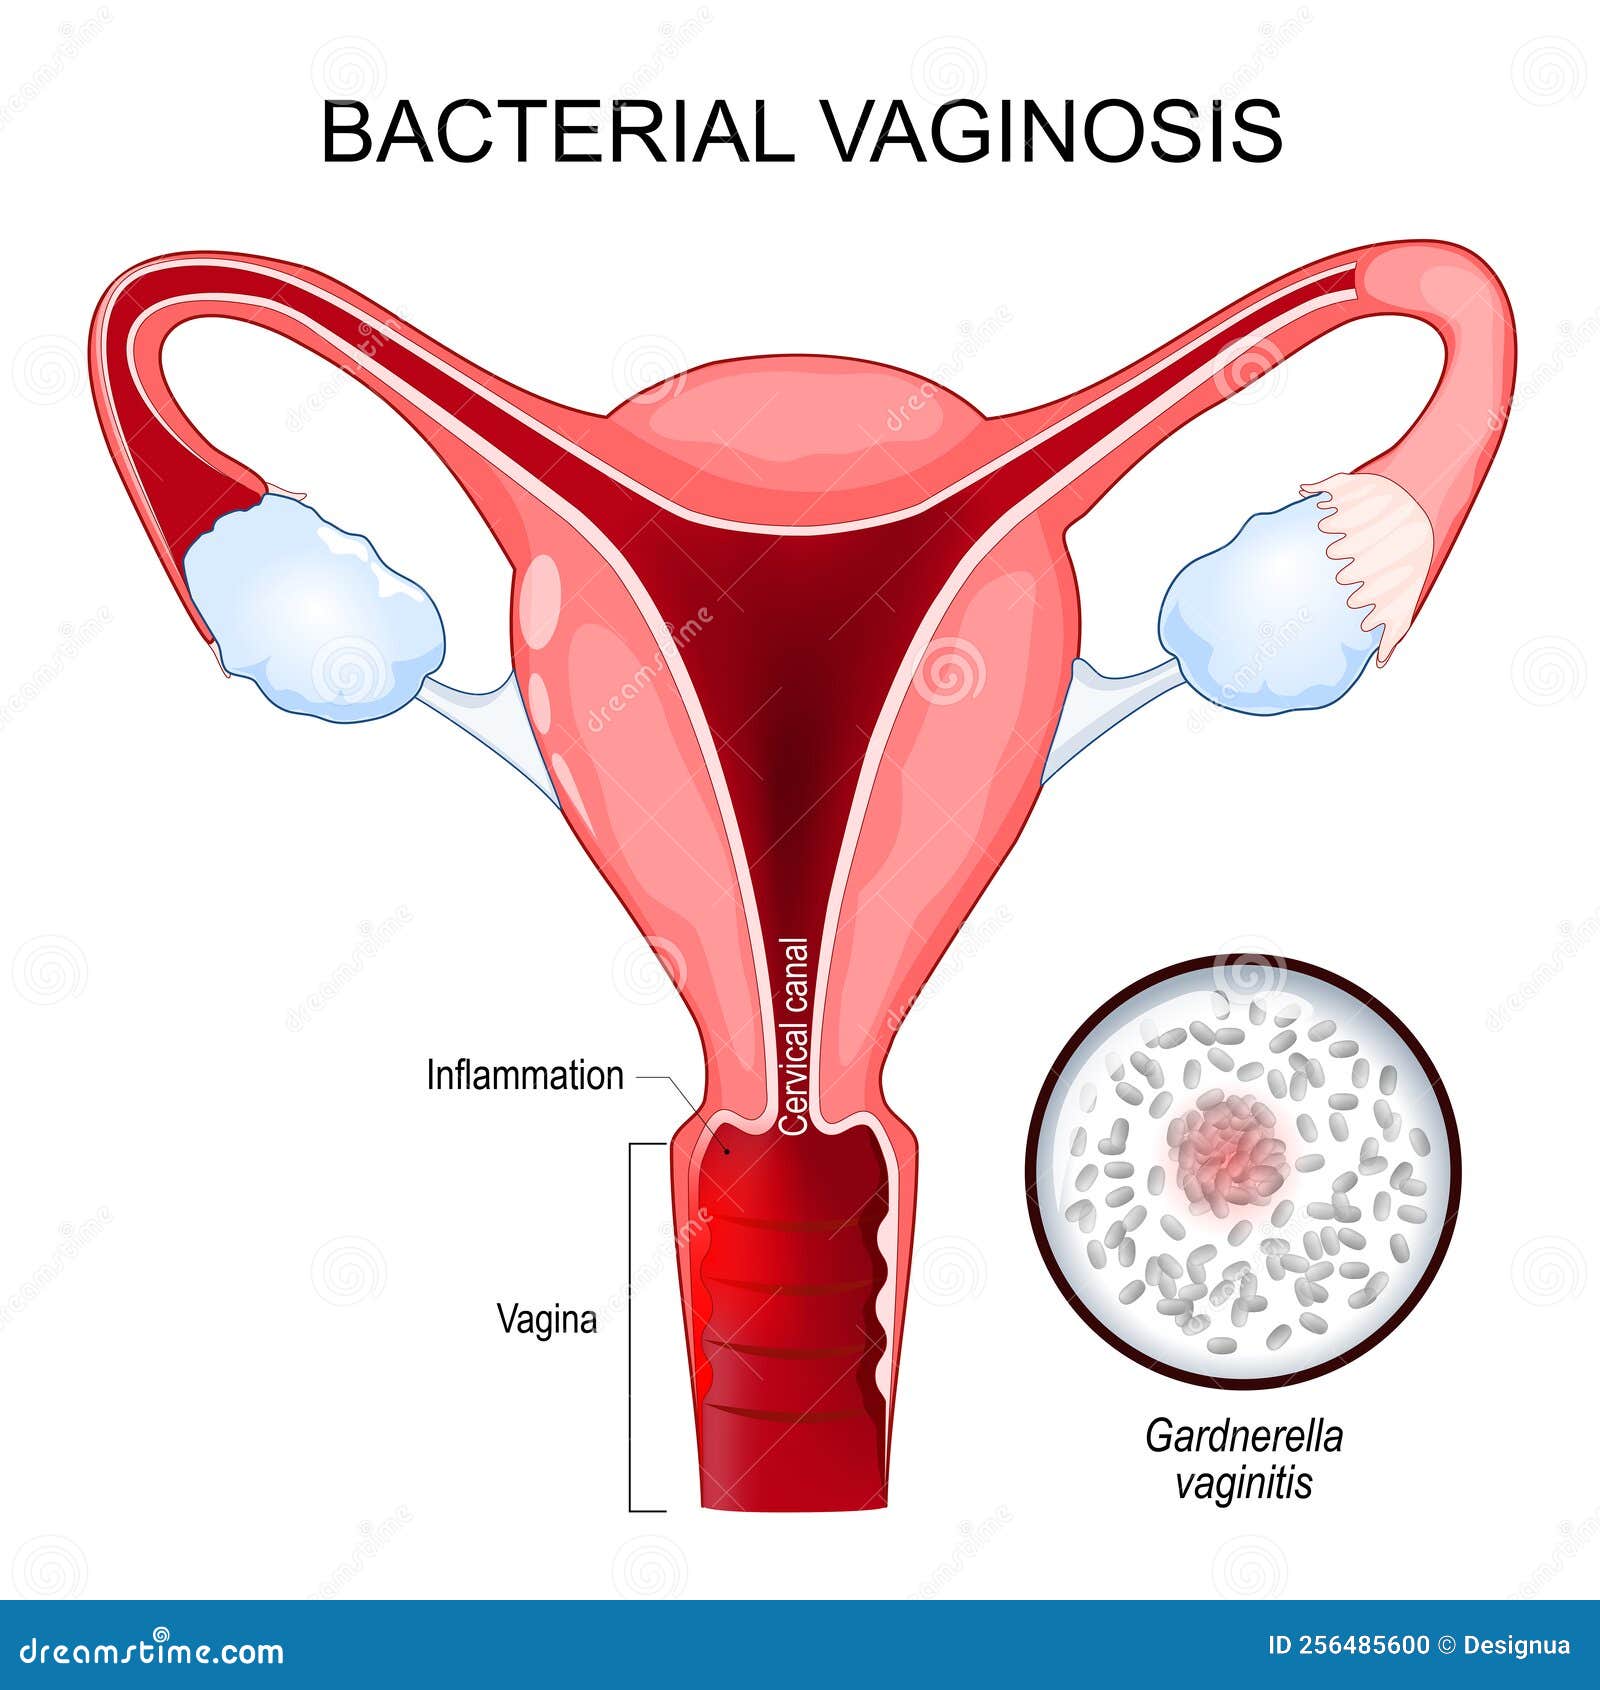 bacterial vaginosis. cross section of human uterus. close-up of g. vaginalis.